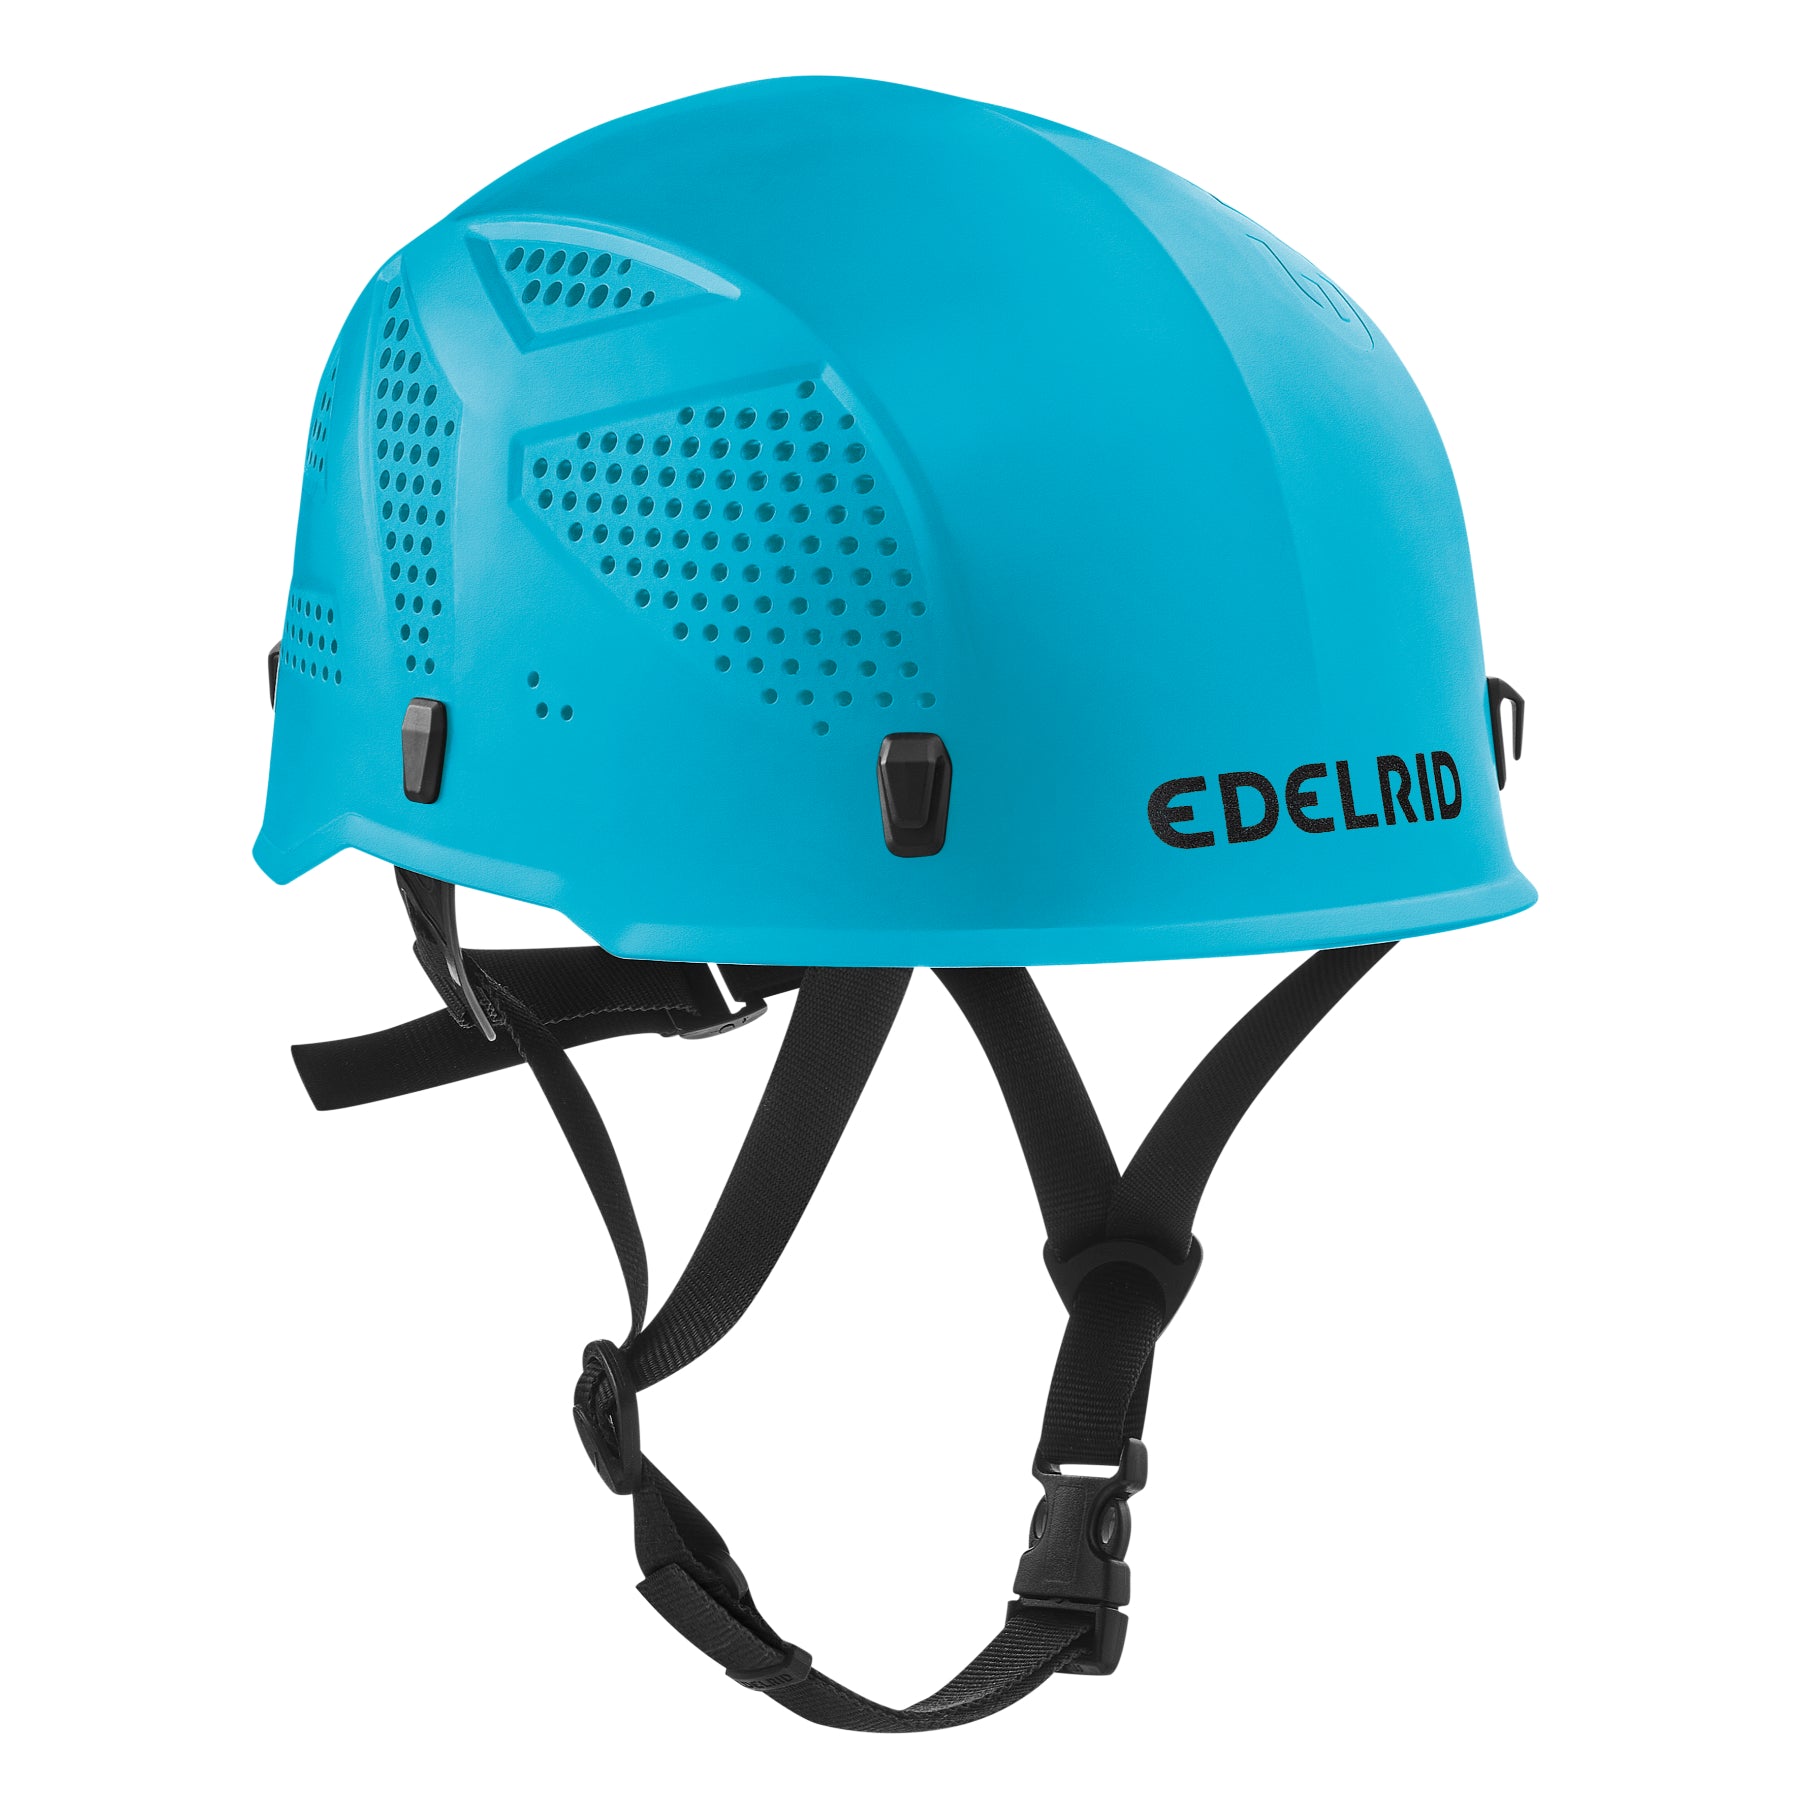 Edelrid Ultralight helmet in icemint colour